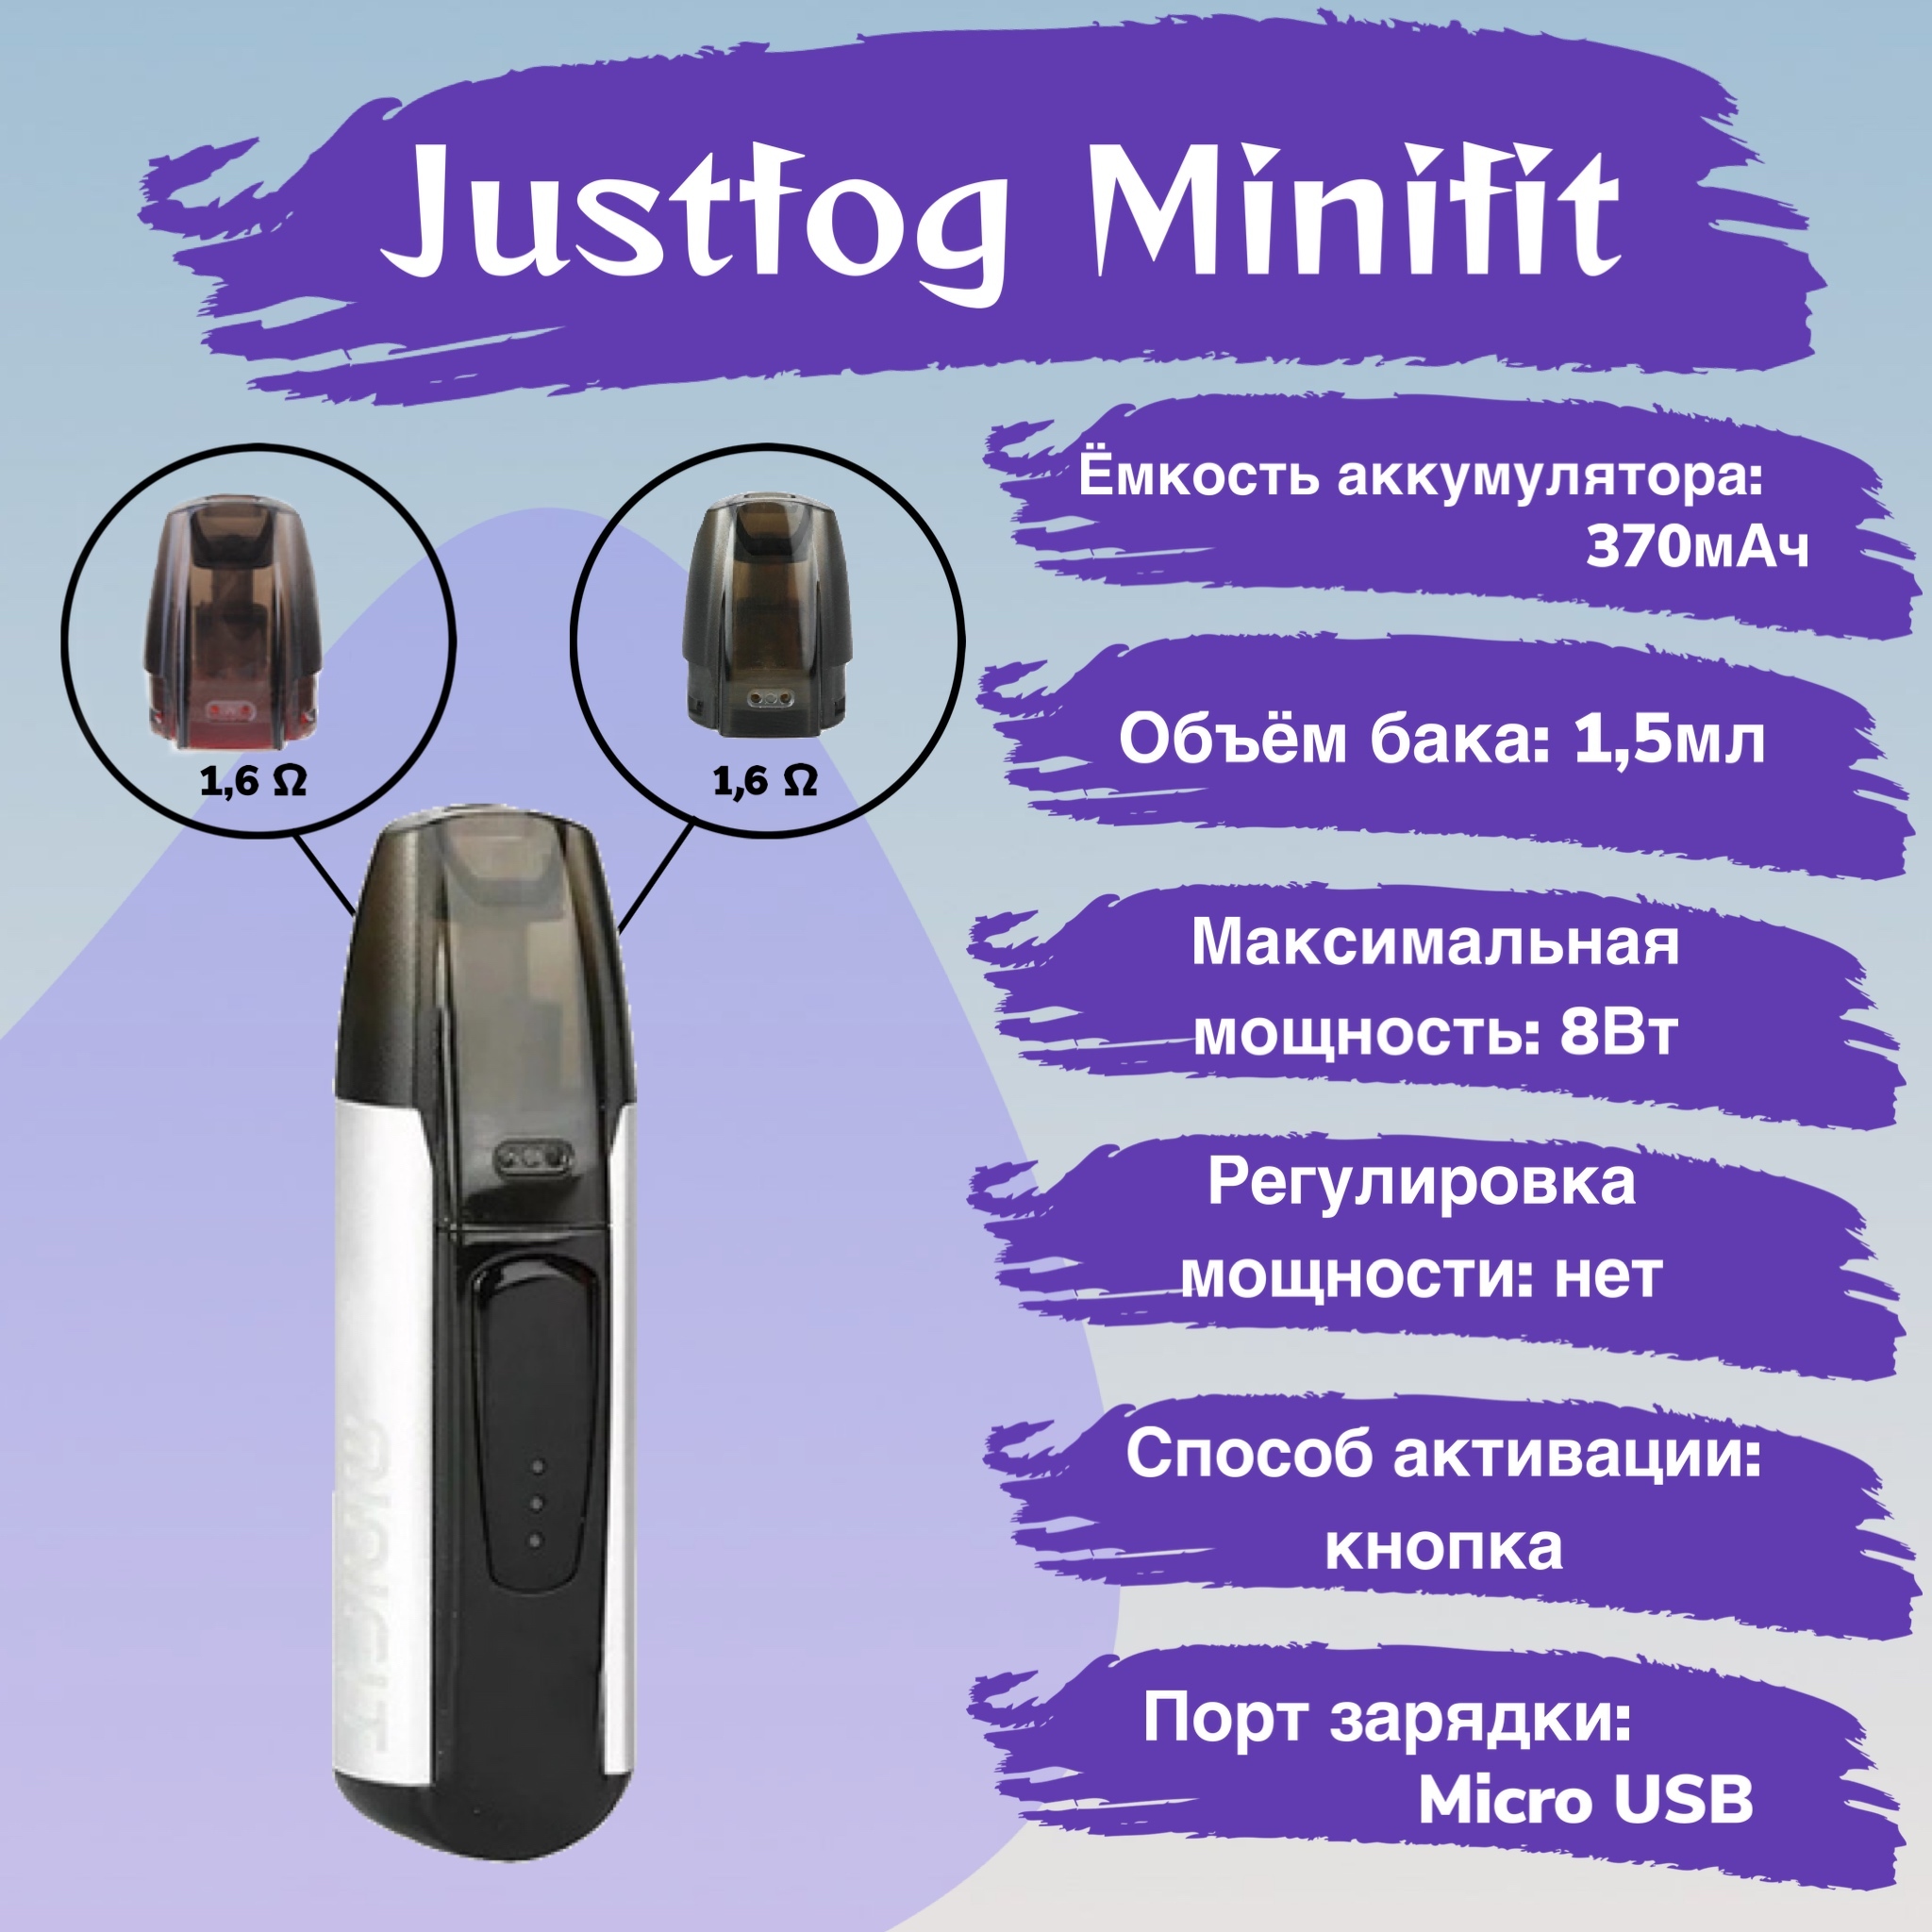 Минифит ватт. Justfog MINIFIT Starter Kit Fog 370mah. Набор Justfog MINIFIT Starter 370mah Kit. Justfog MINIFIT Kit, 370mah, 7w. Pod комплект Justfog MINIFIT M (370mah 1,5ml 15w).